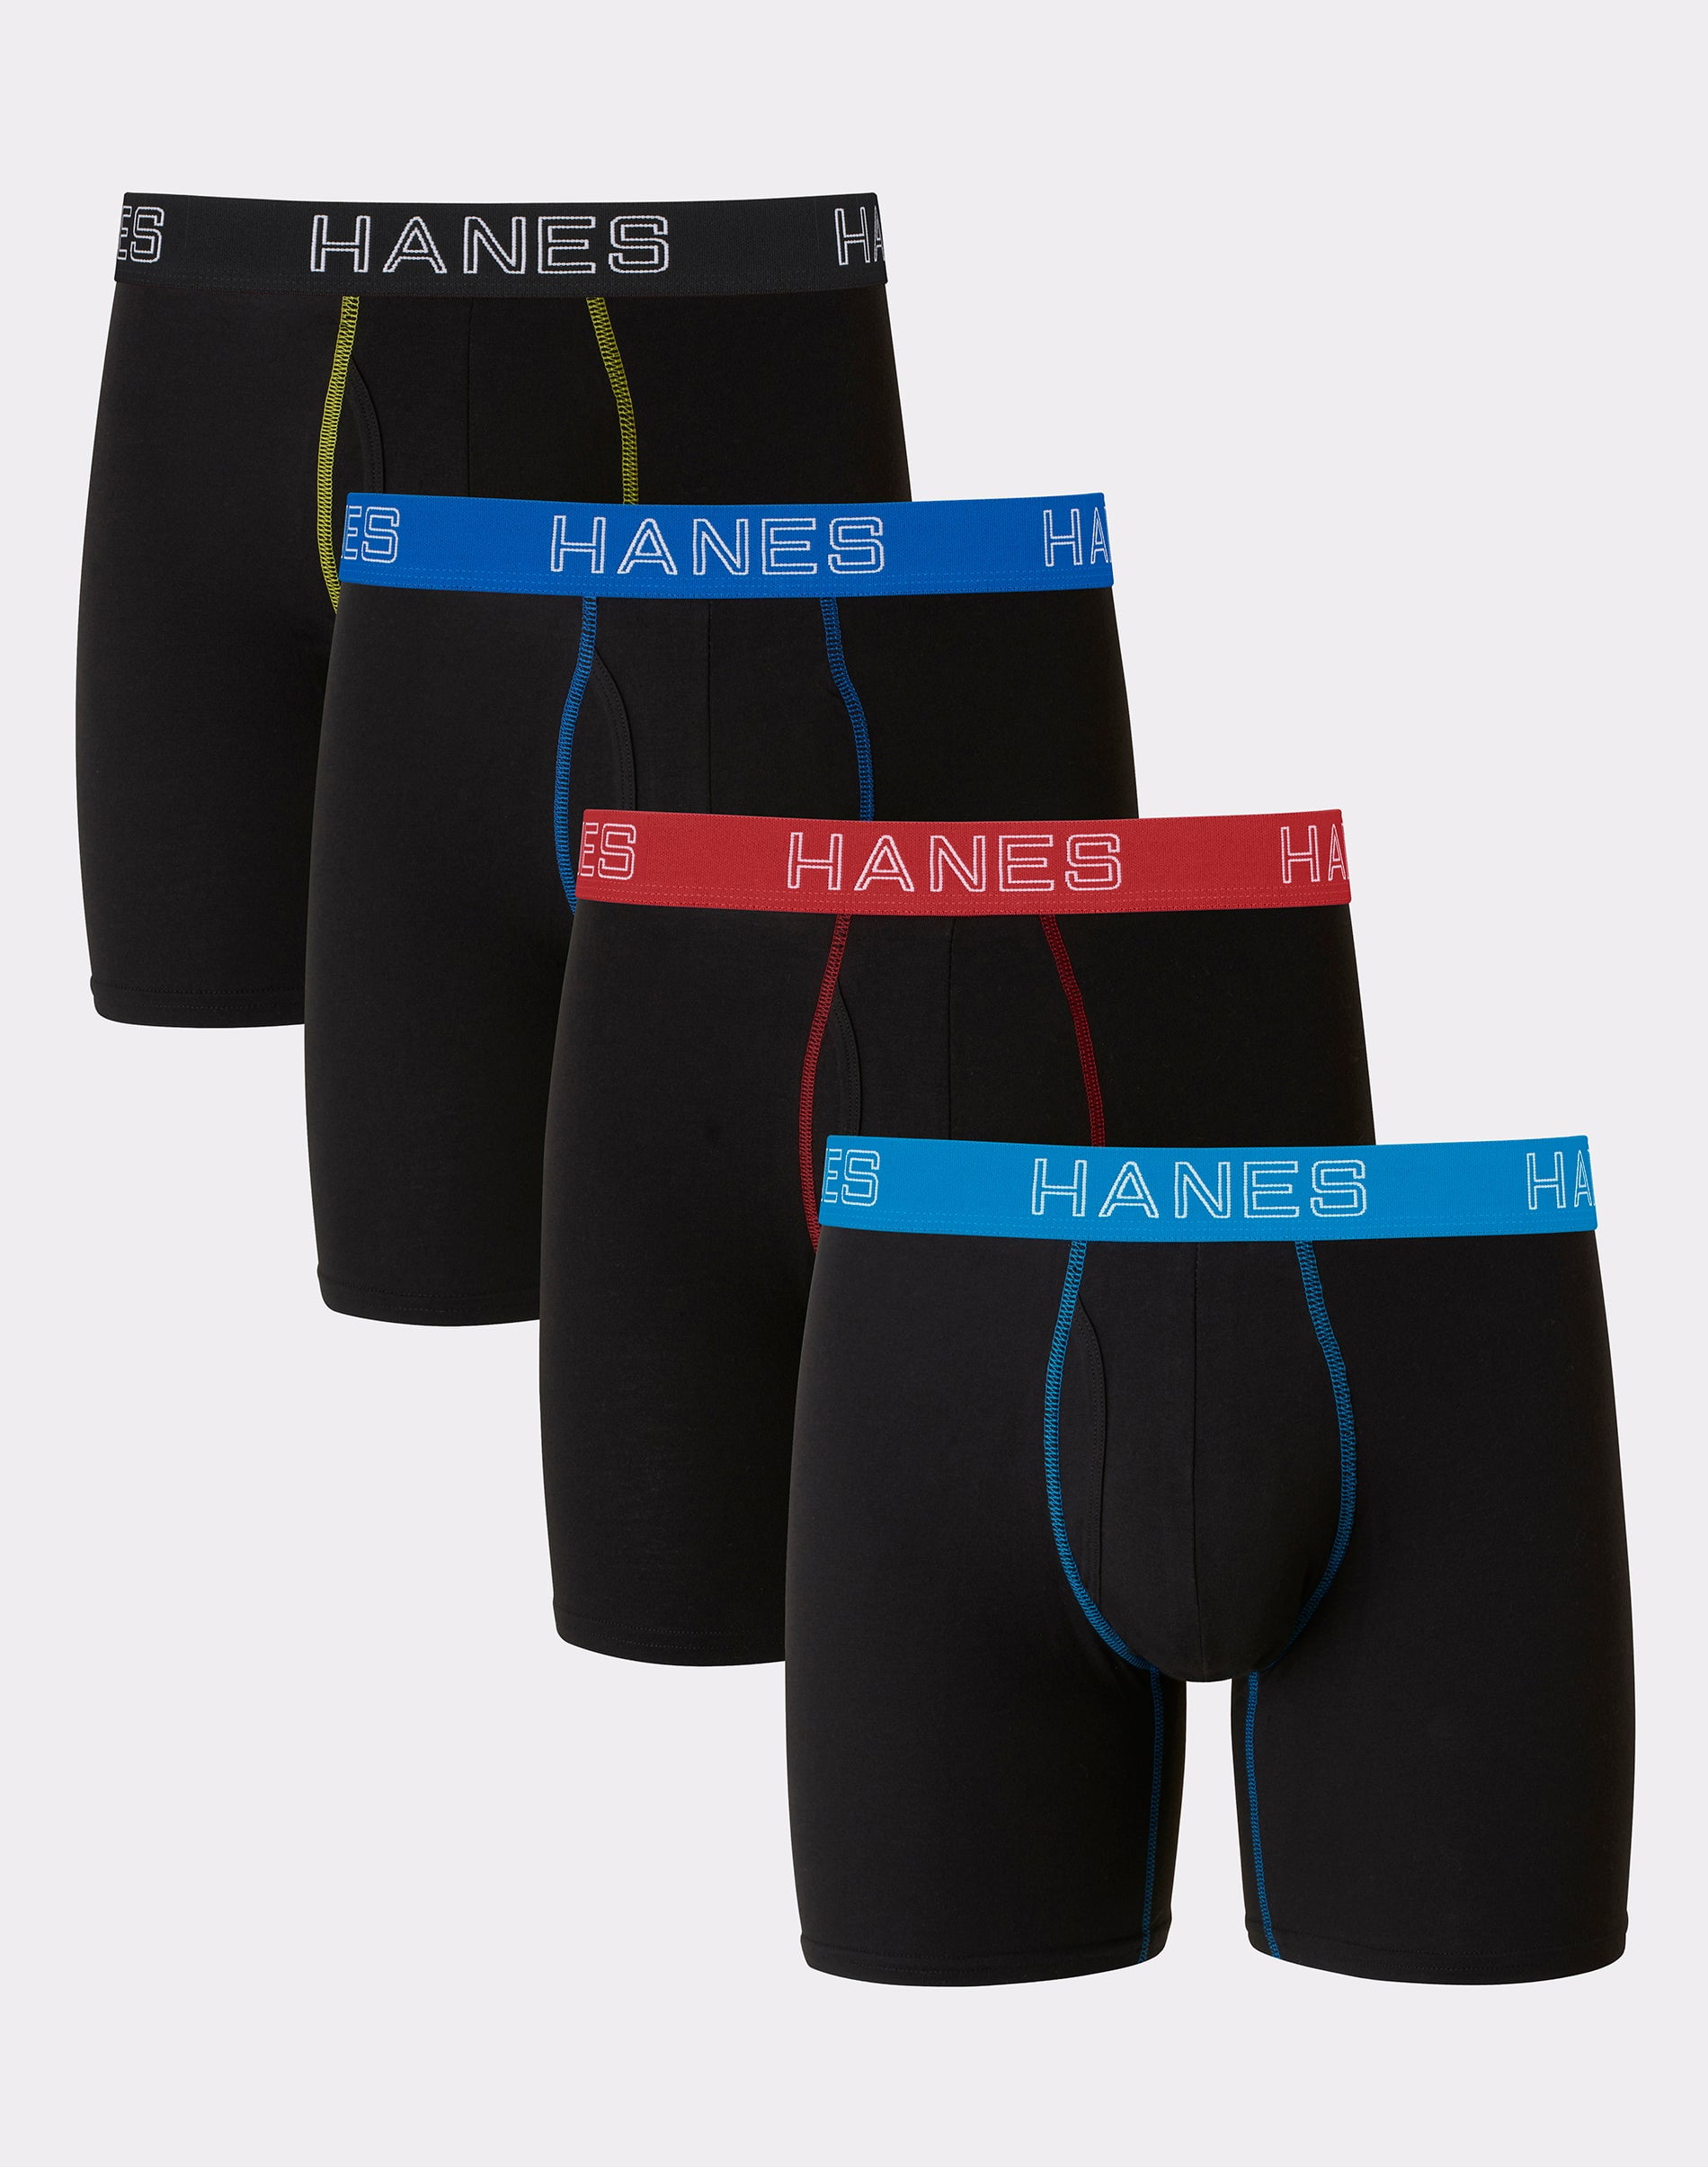 Hanes Ultimate Stretch Cotton Big Men’s Boxer Brief Underwear, Black,4 ...